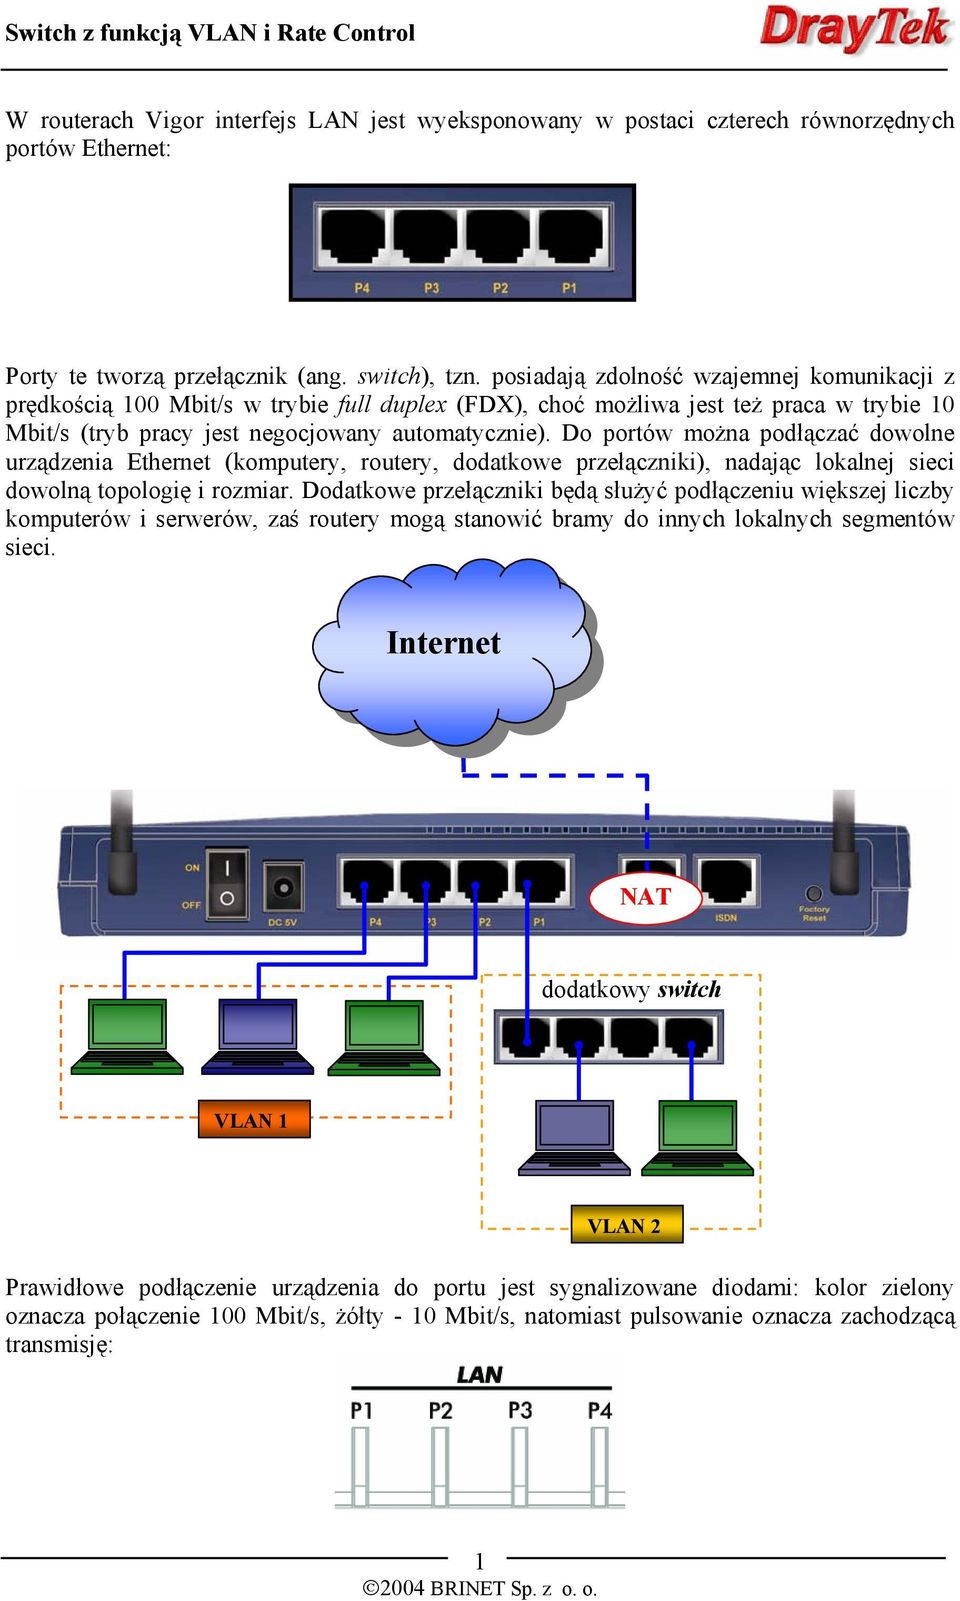 Do portów można podłączać dowolne urządzenia Ethernet (komputery, routery, dodatkowe przełączniki), nadając lokalnej sieci dowolną topologię i rozmiar.